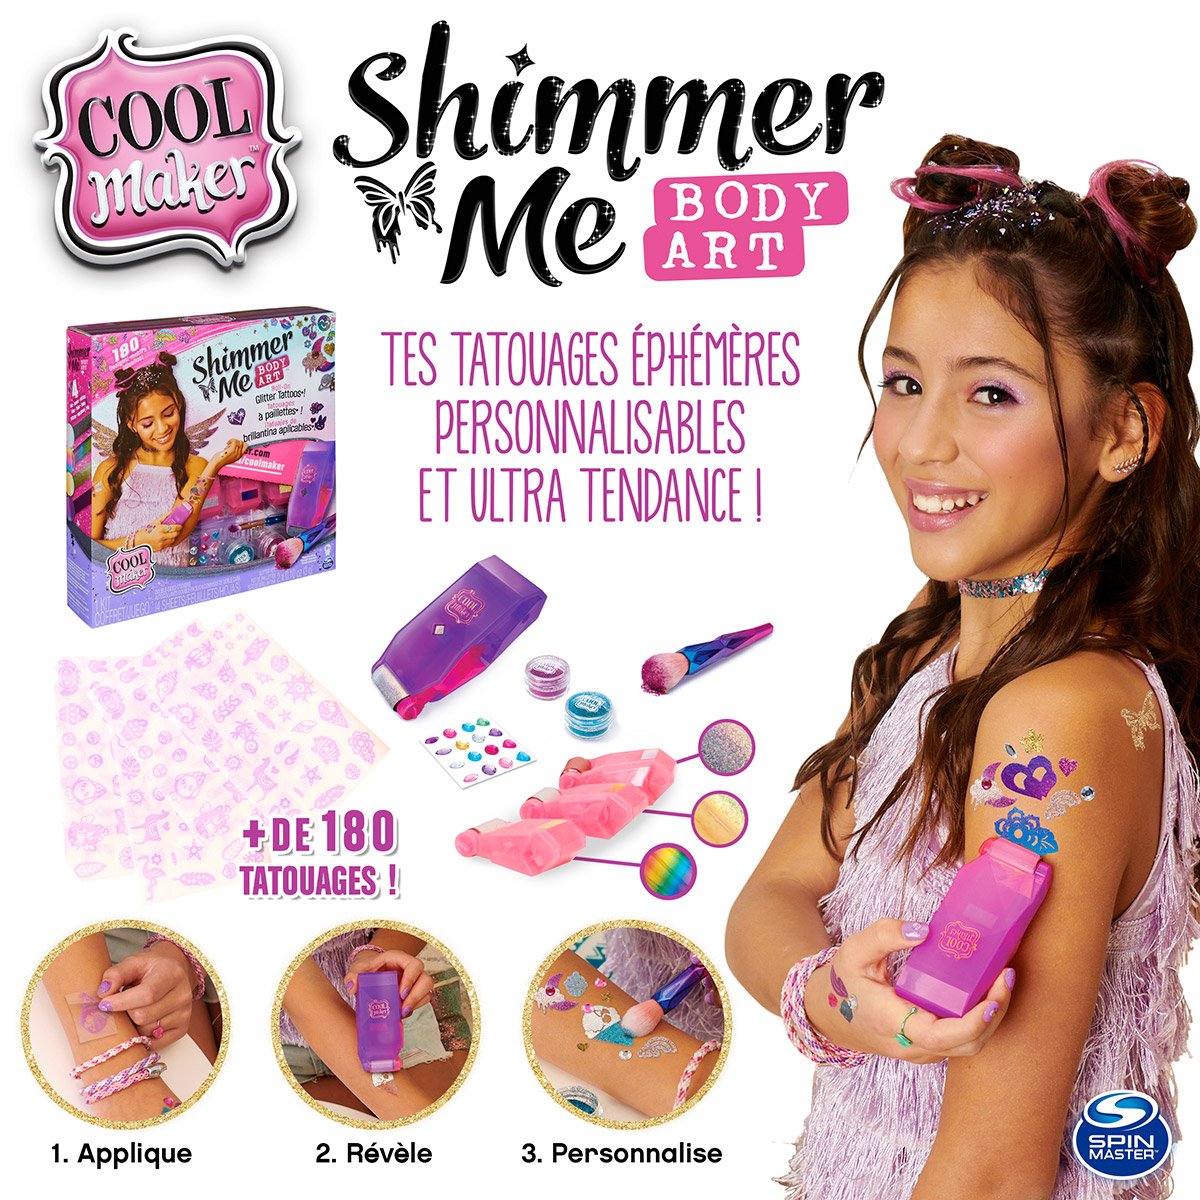 COOL MAKER - Shimmer Me Body Art - Tatouages éphémères - La Grande Récré